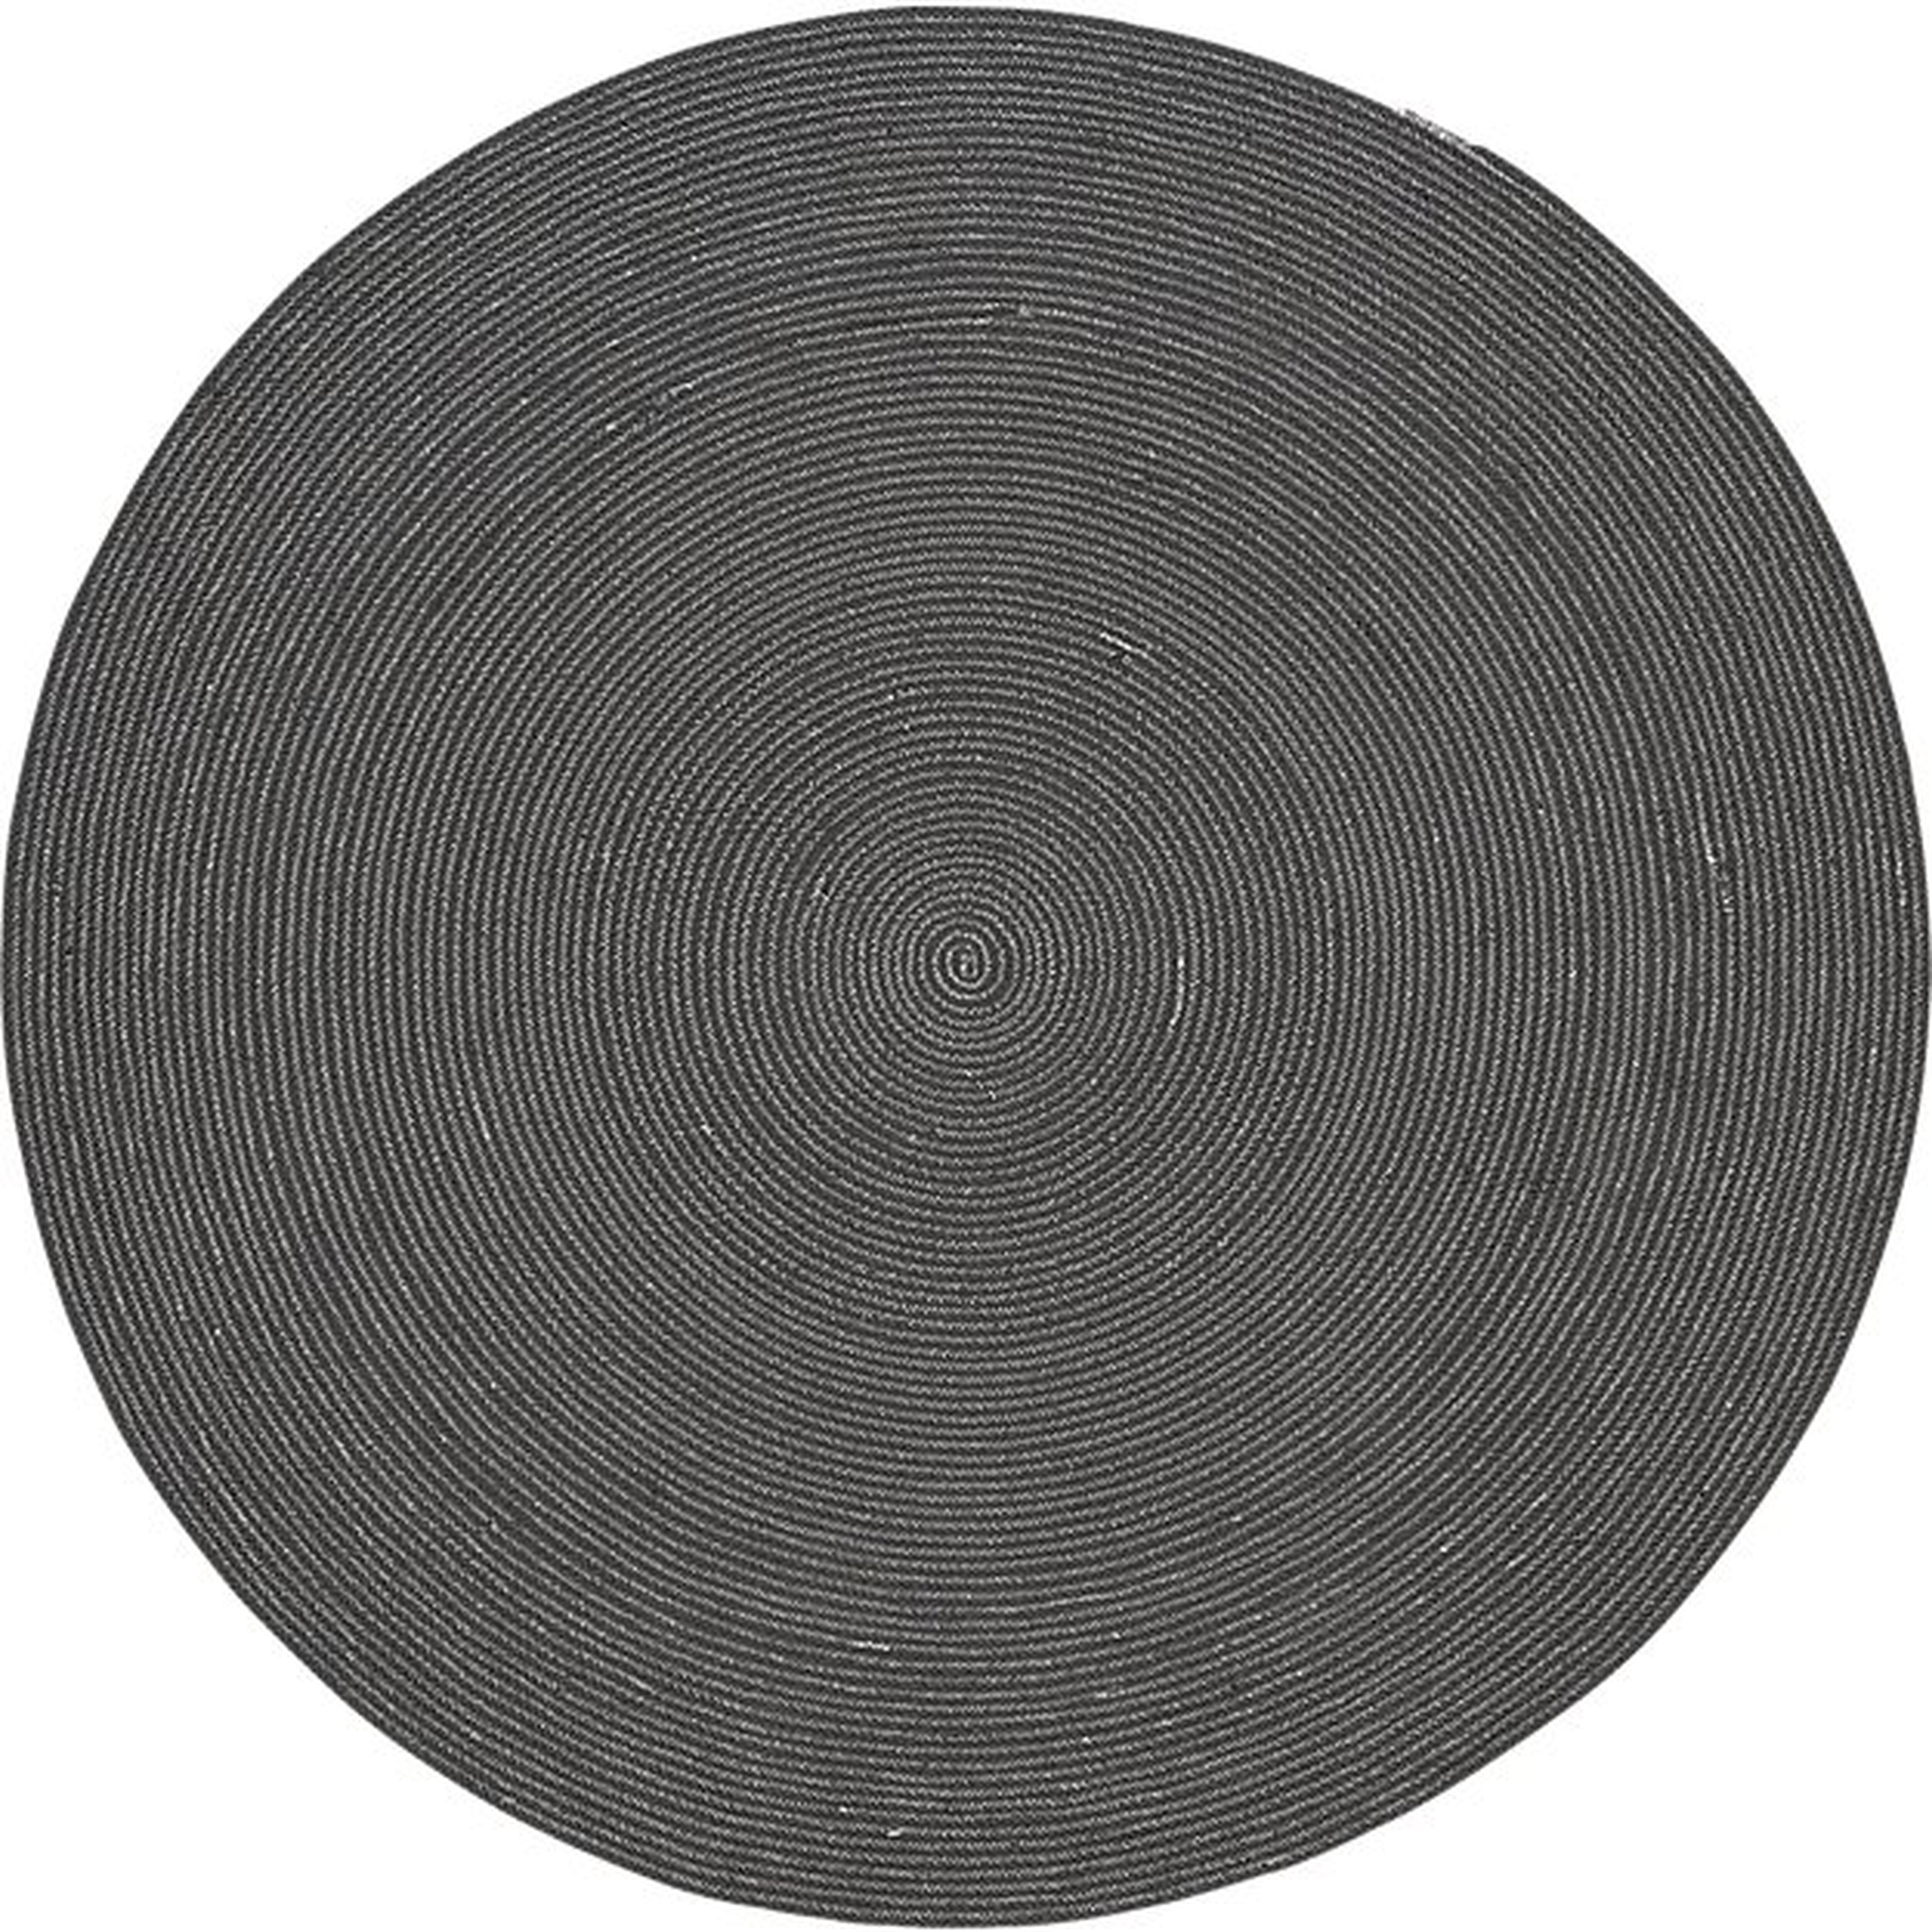 Circle rug 6' - CB2